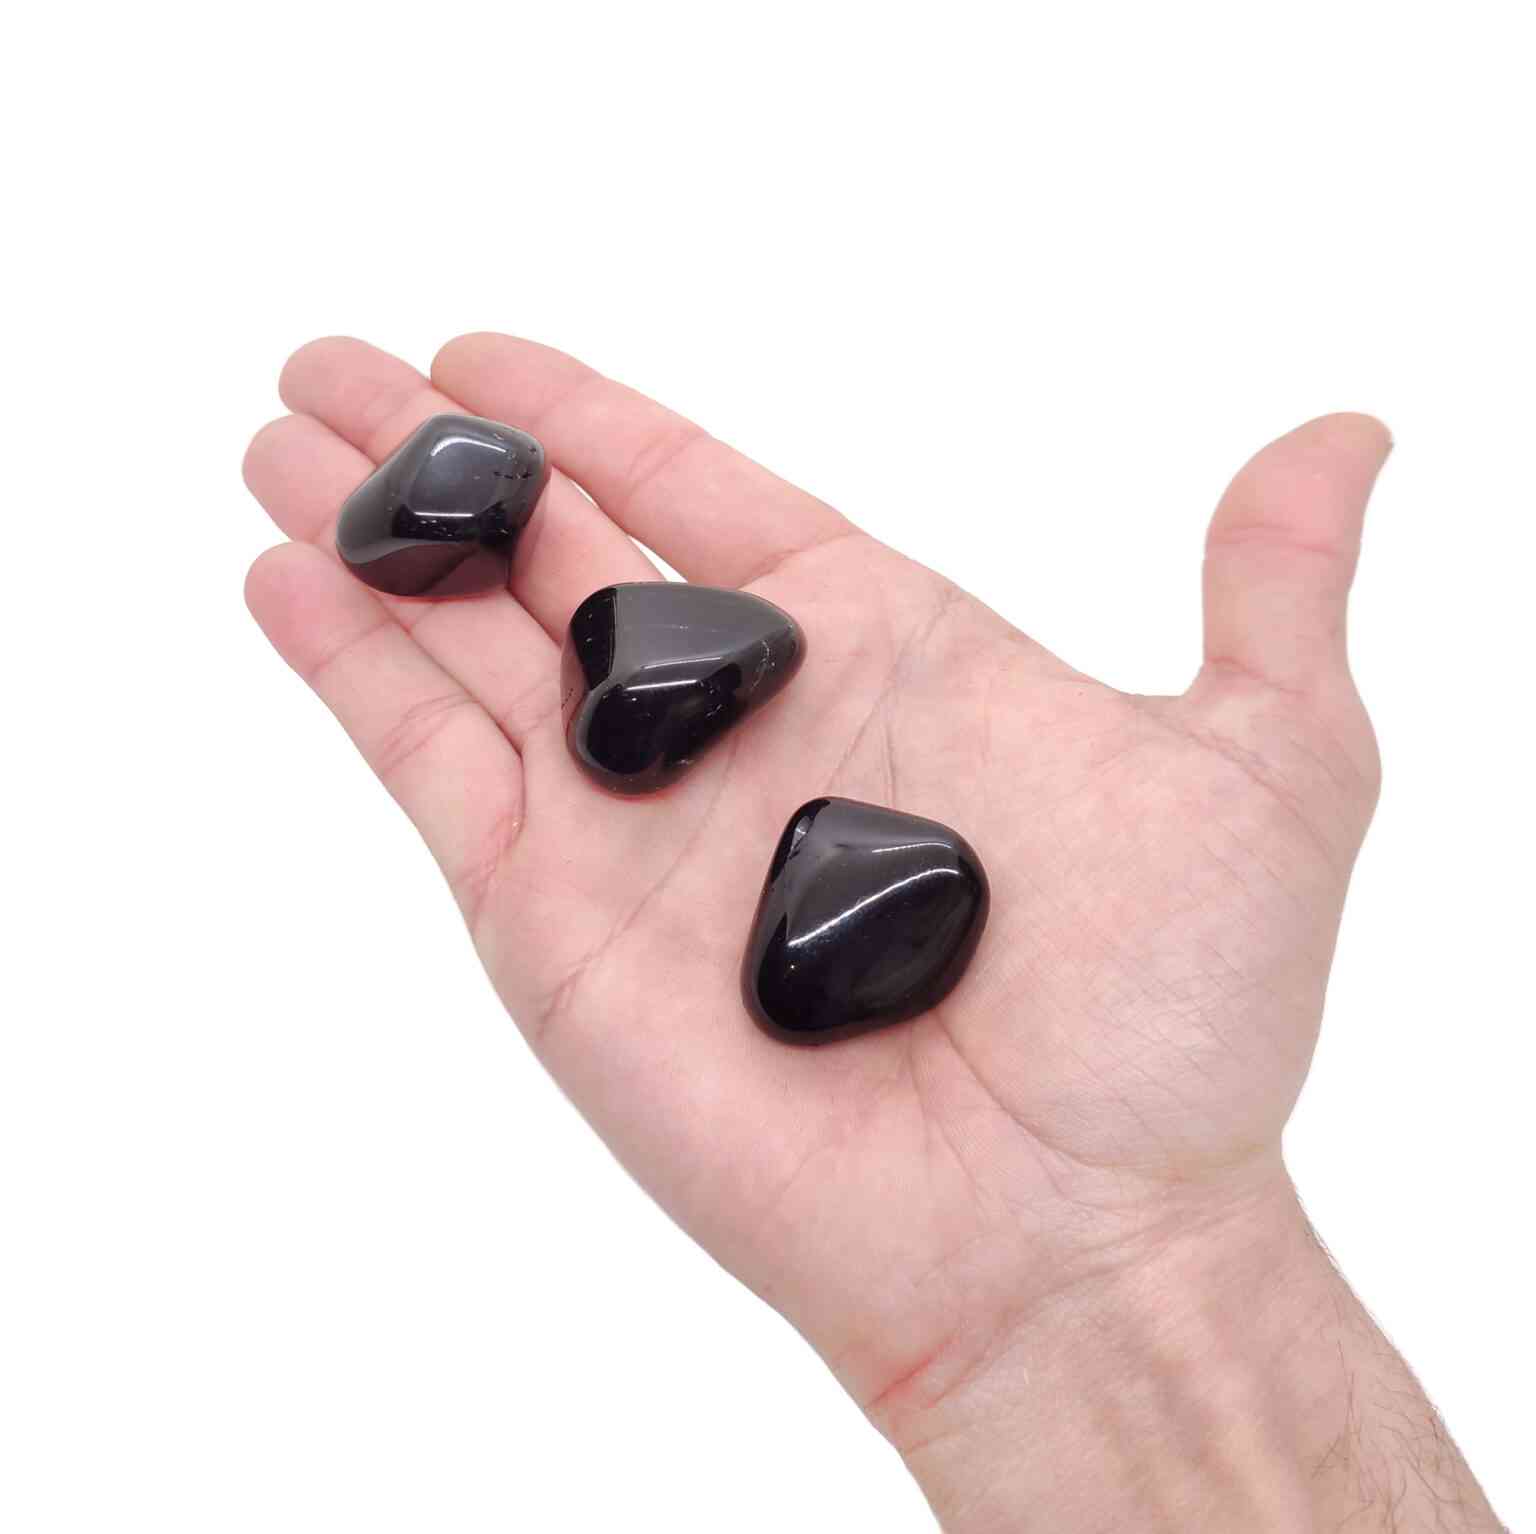 Schwarze Obsidian Trommelsteine auf einer Handfläche.